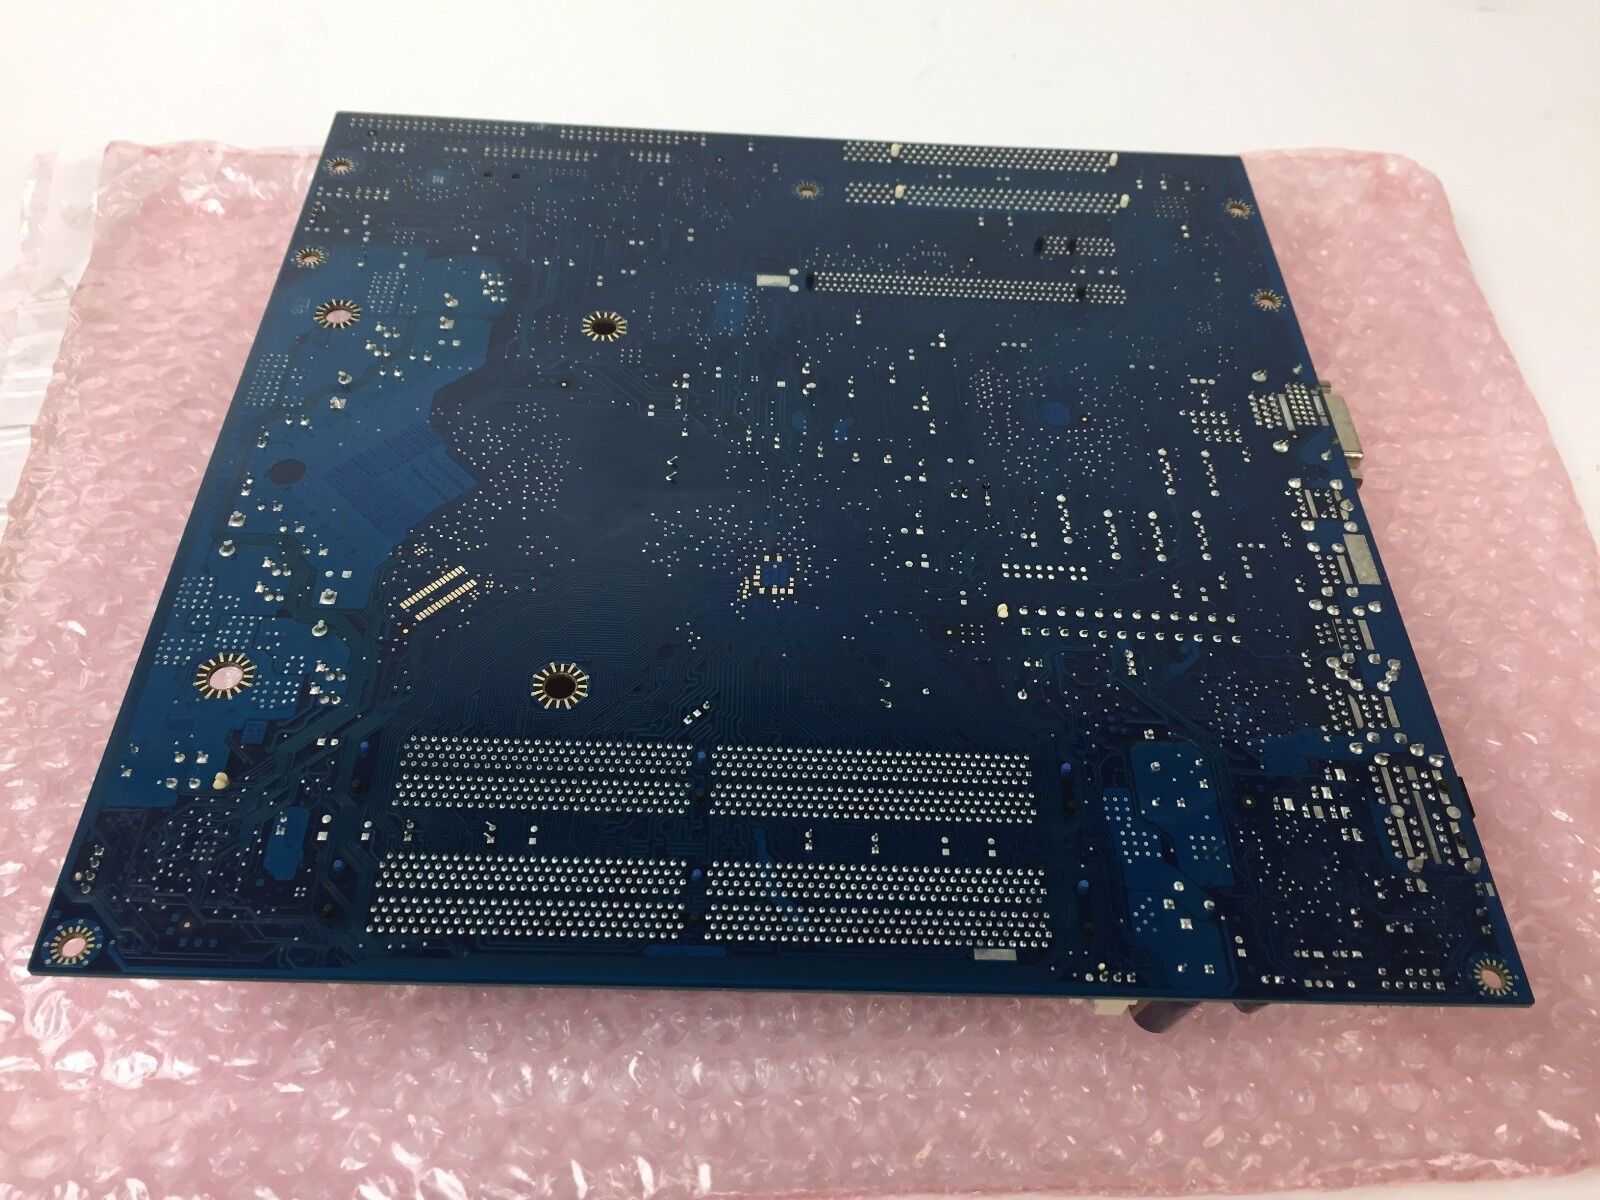 Intel DG965MQ, D37419-302 LGA 775/Socket T with Accessories